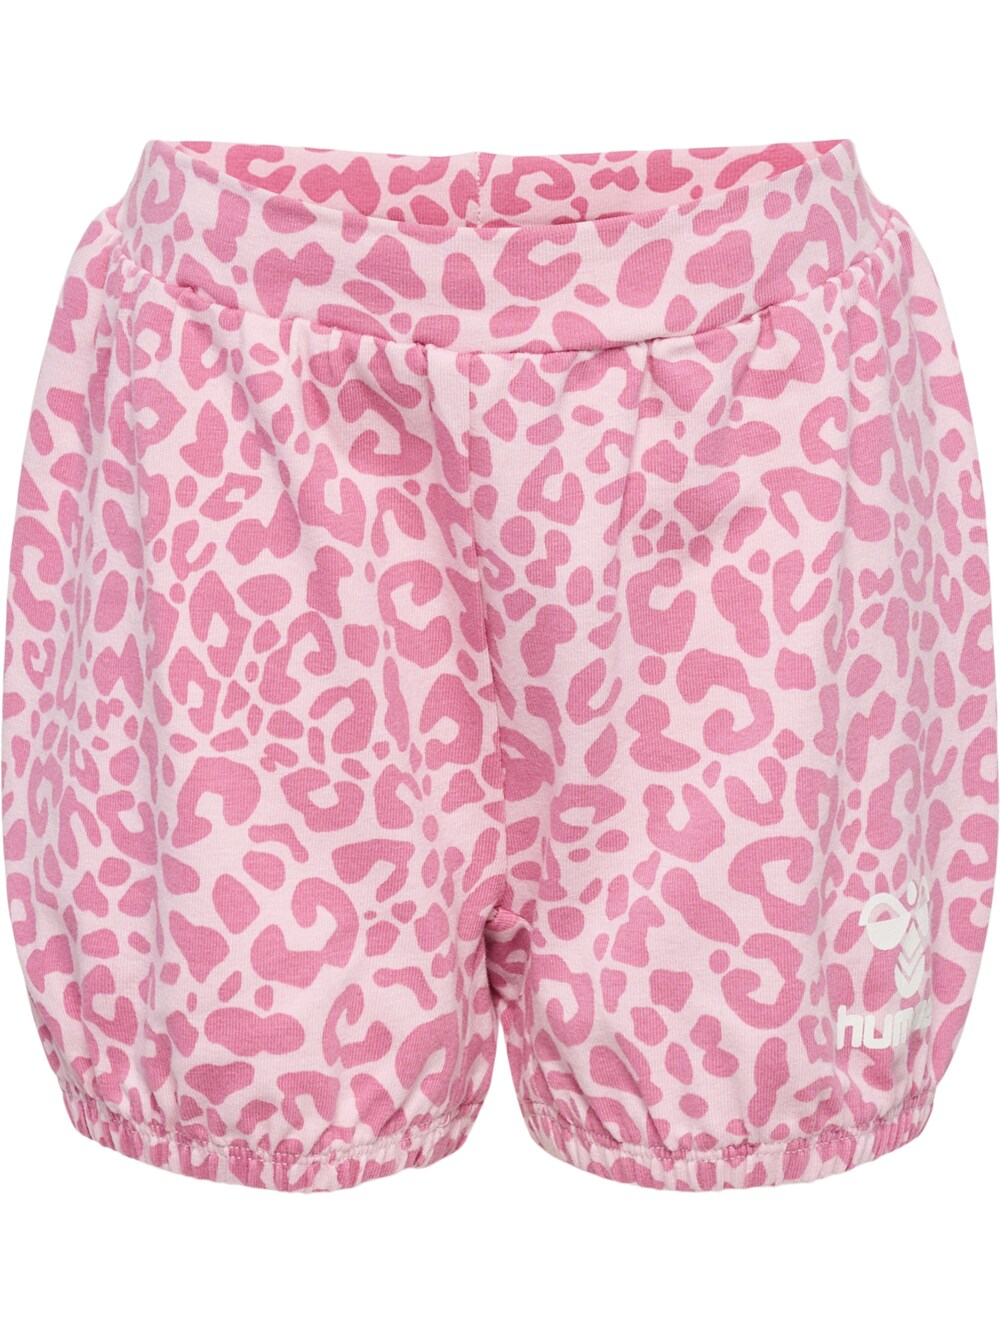 Обычные брюки Hummel, розовый/светло-розовый обычные брюки chiemsee светло розовый